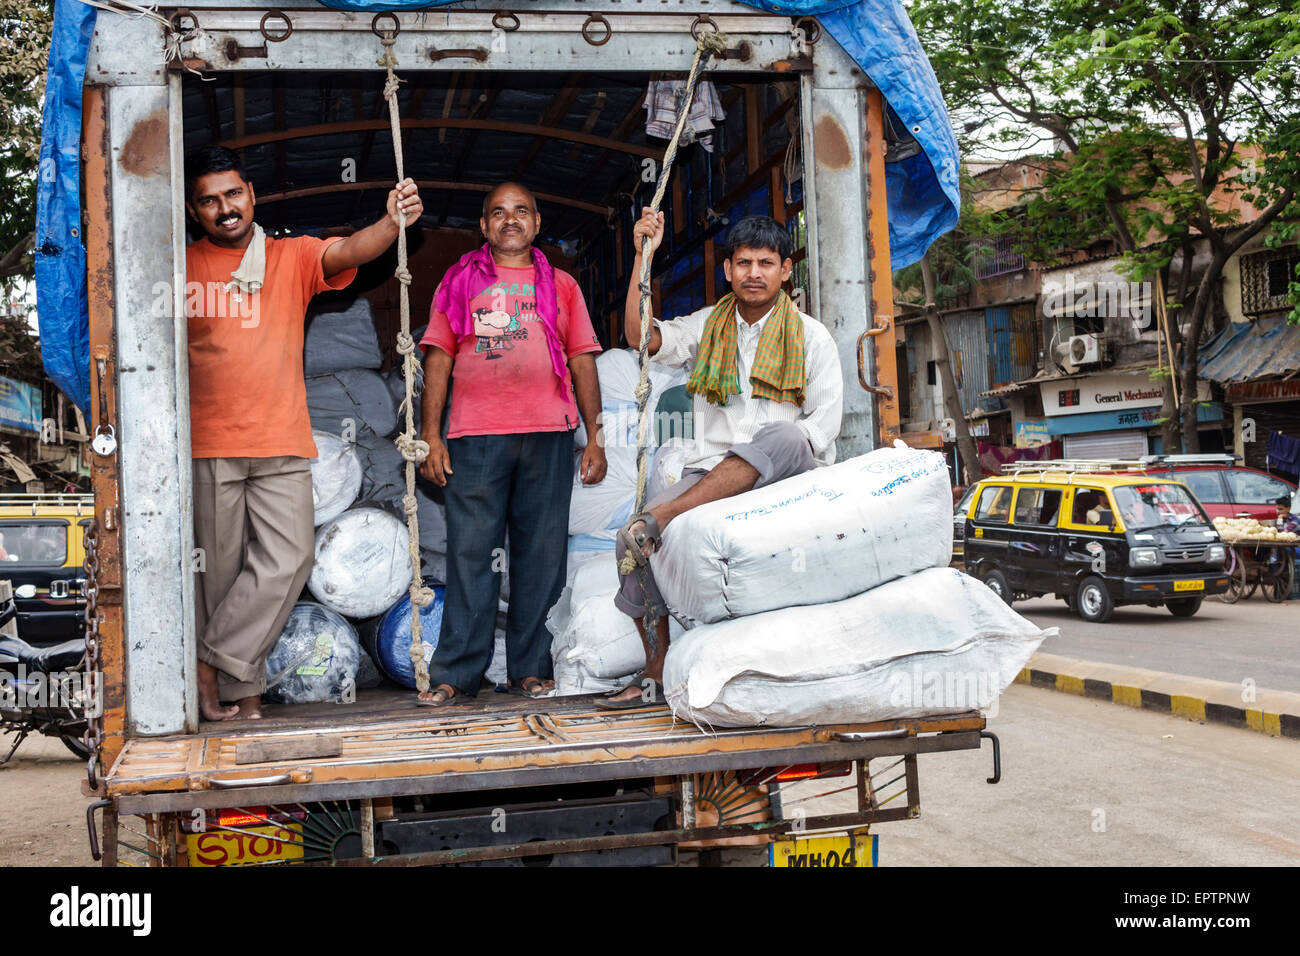 Mumbai Indien, Dharavi, 60 Fuß Straße, Slum, niedriges Einkommen, arm, Armut, Männer männlich, Angestellte Arbeiter, die Personal arbeiten, LKW, LKW, LKW, Indien 150228082 Stockfoto